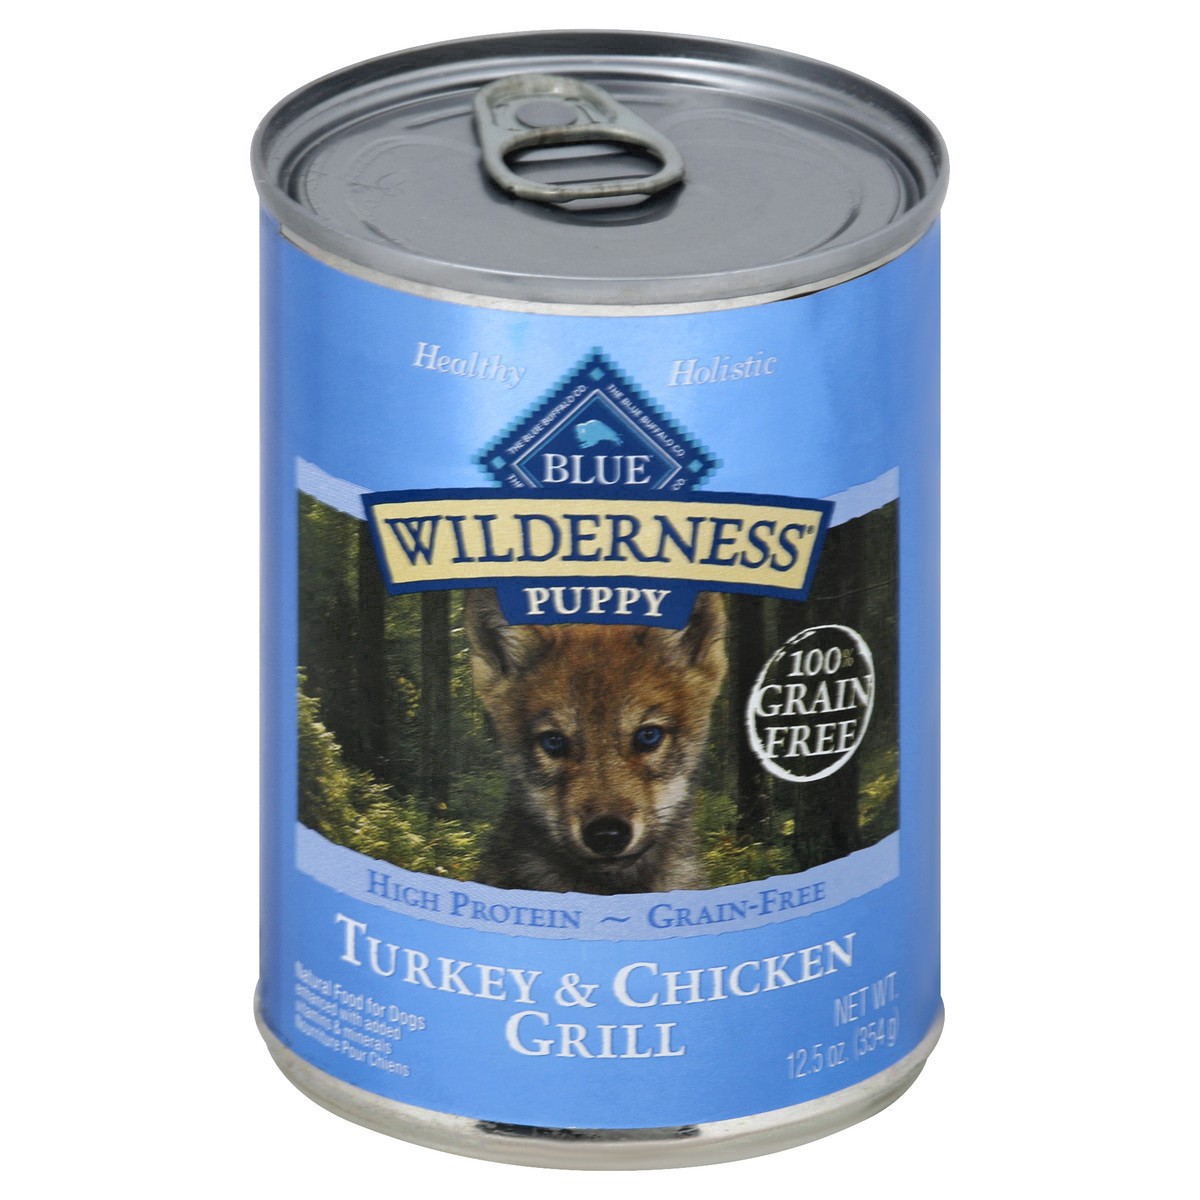 slide 11 of 27, Blue Buffalo Wilderness Grain Free High Protein Wet Dog Food Turkey & Chicken Grill Puppy - 12.5oz, 12.5 oz